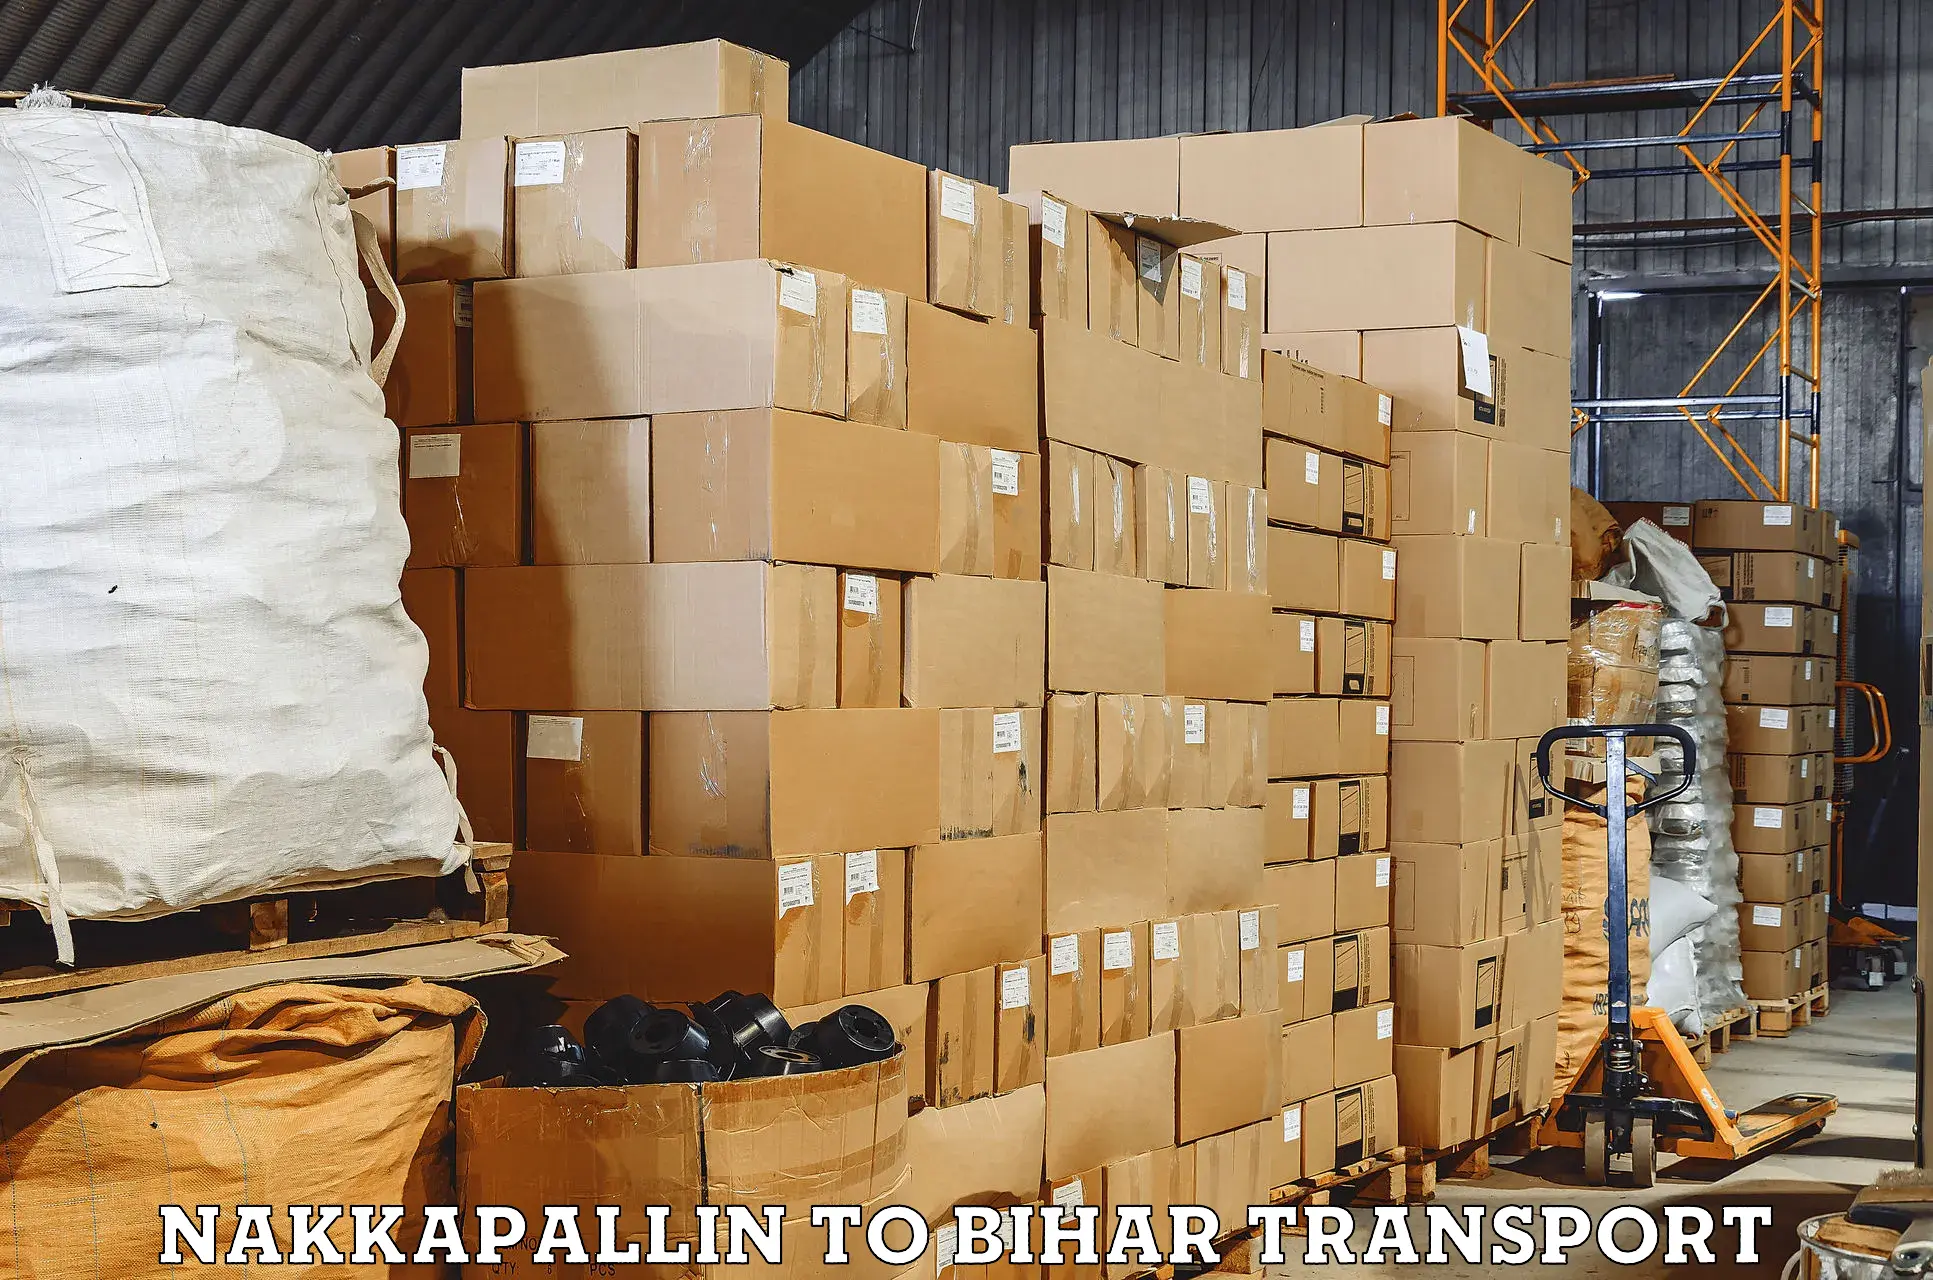 Part load transport service in India Nakkapallin to Mahaddipur